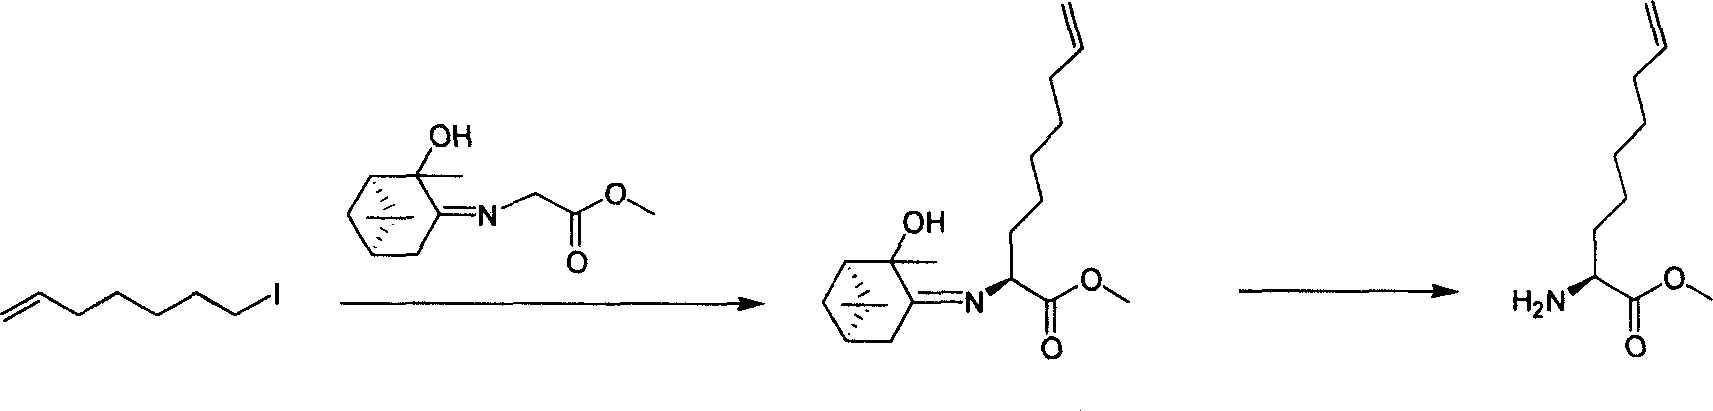 Method for synthesizing 2 - amido - 9 - capric olefine acid